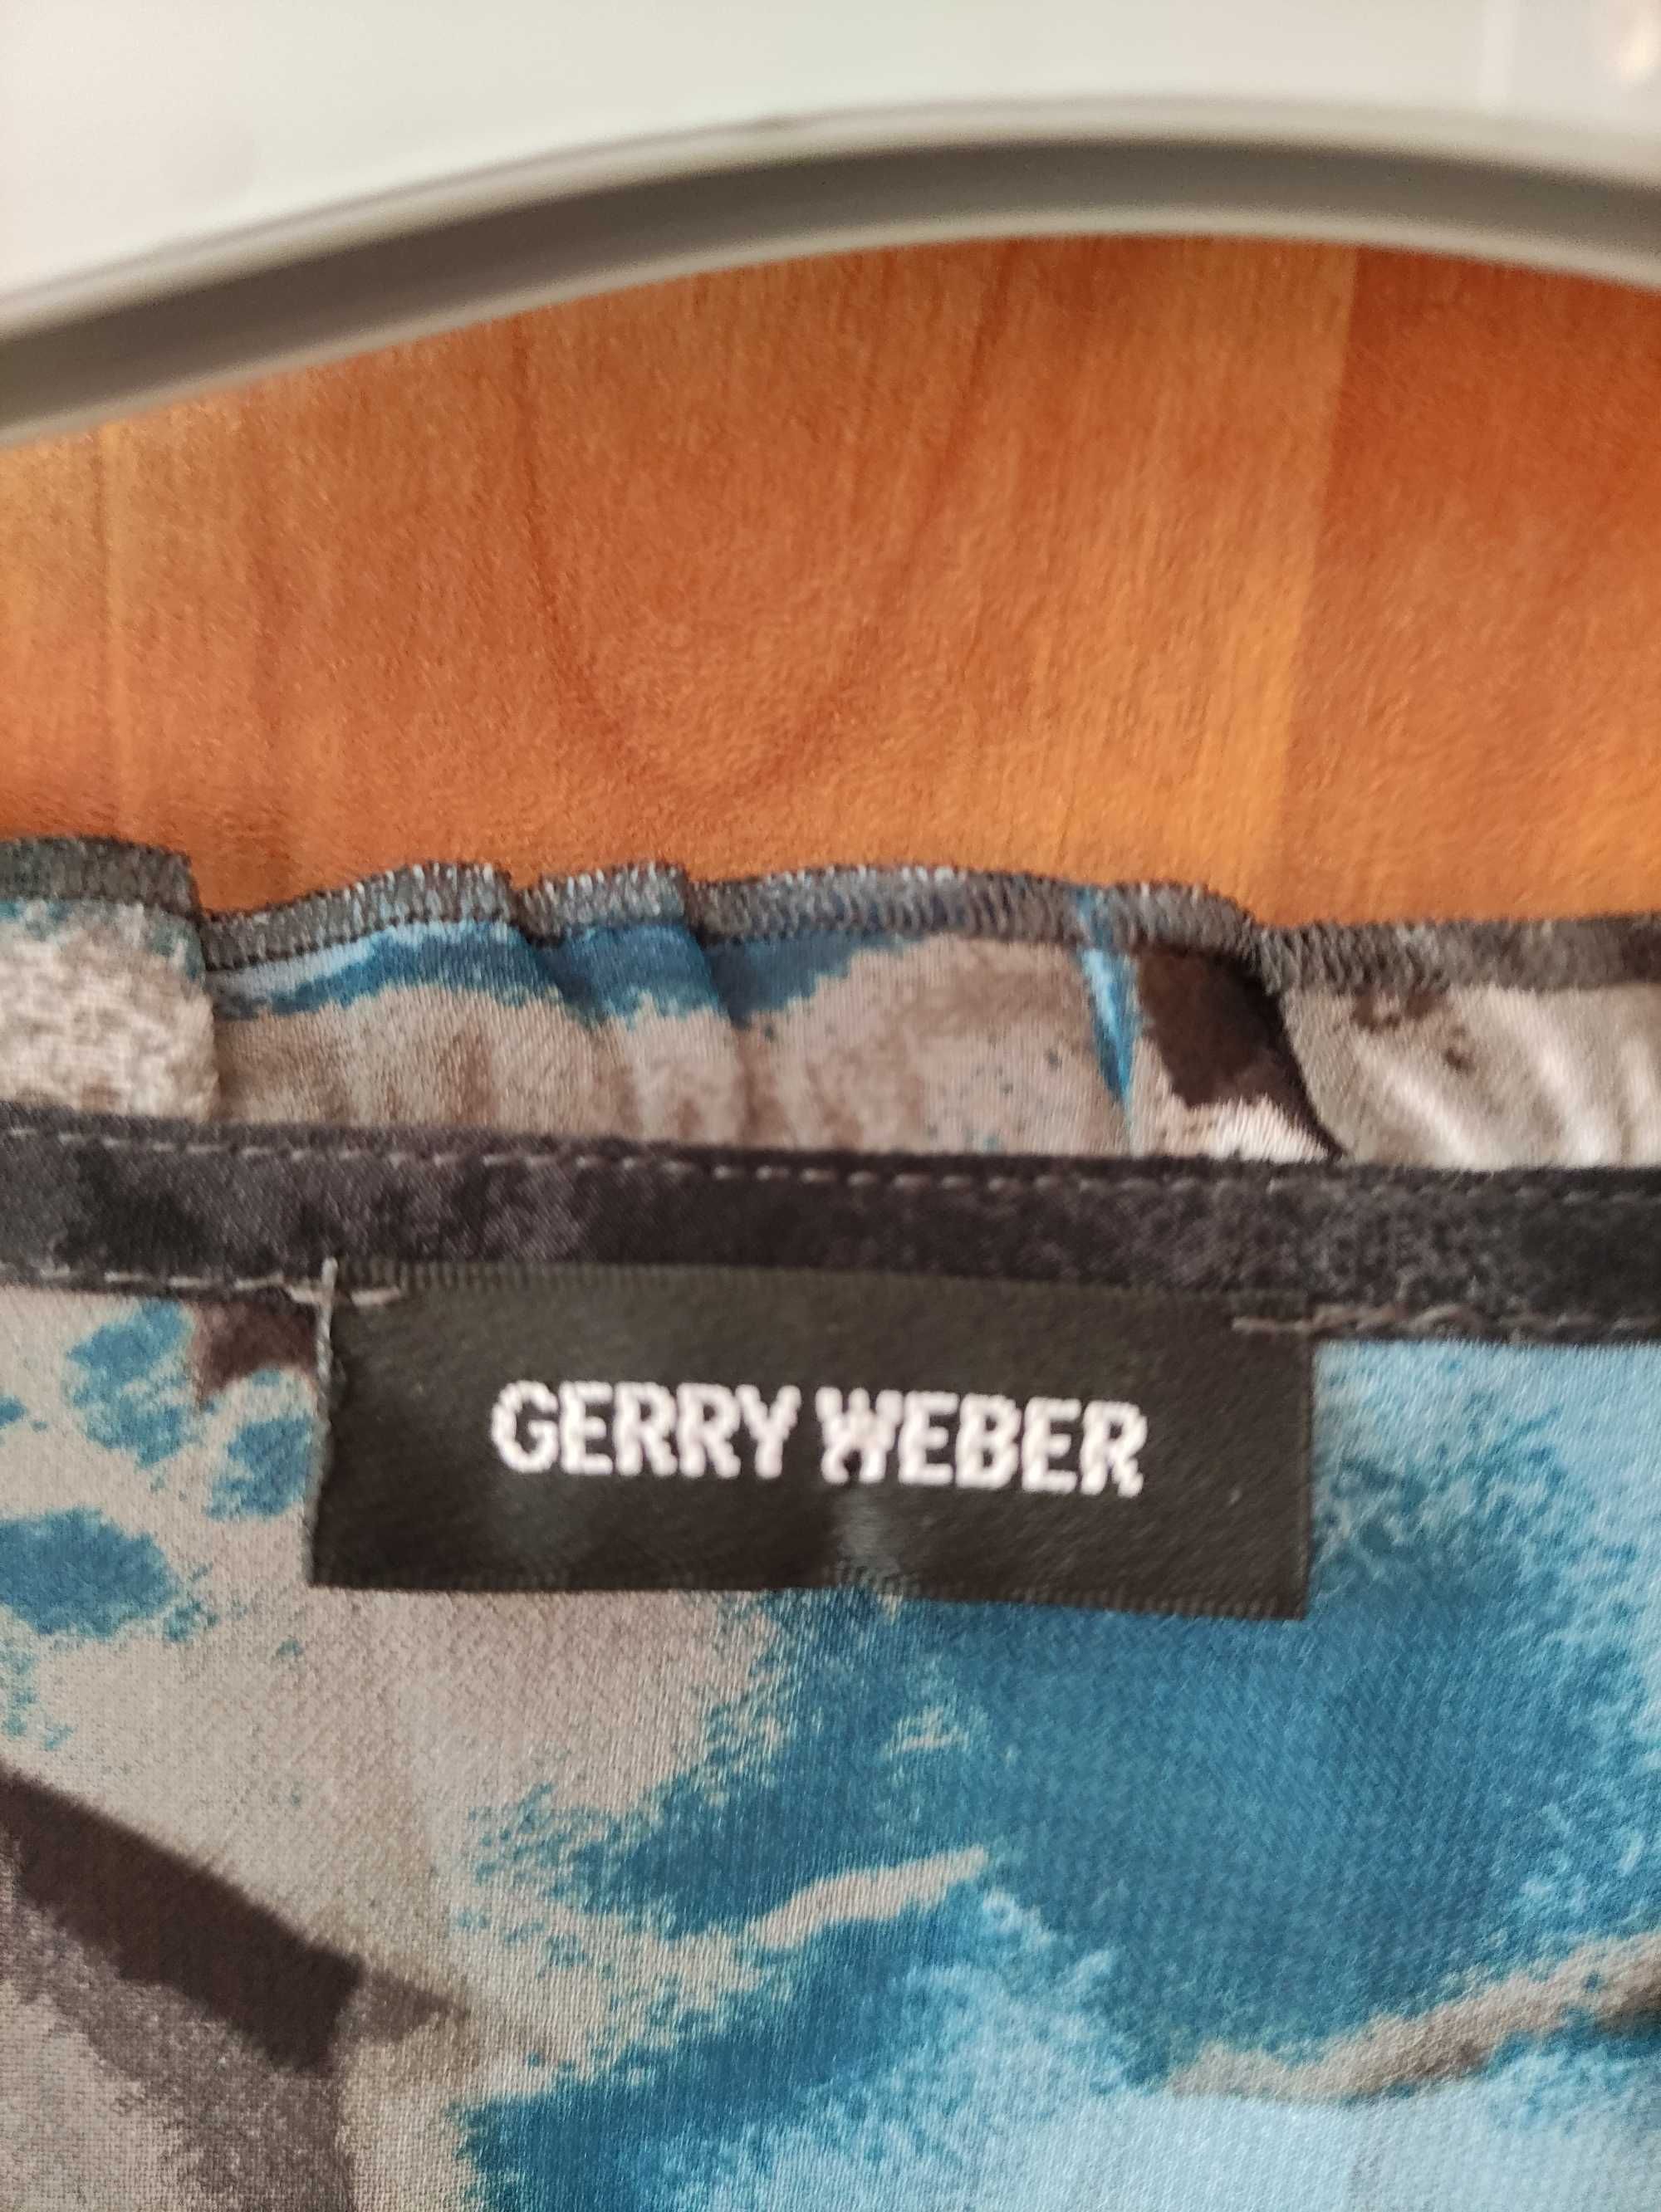 Bluzka typu tunika, rozmiar 40, firma Gerry Weber